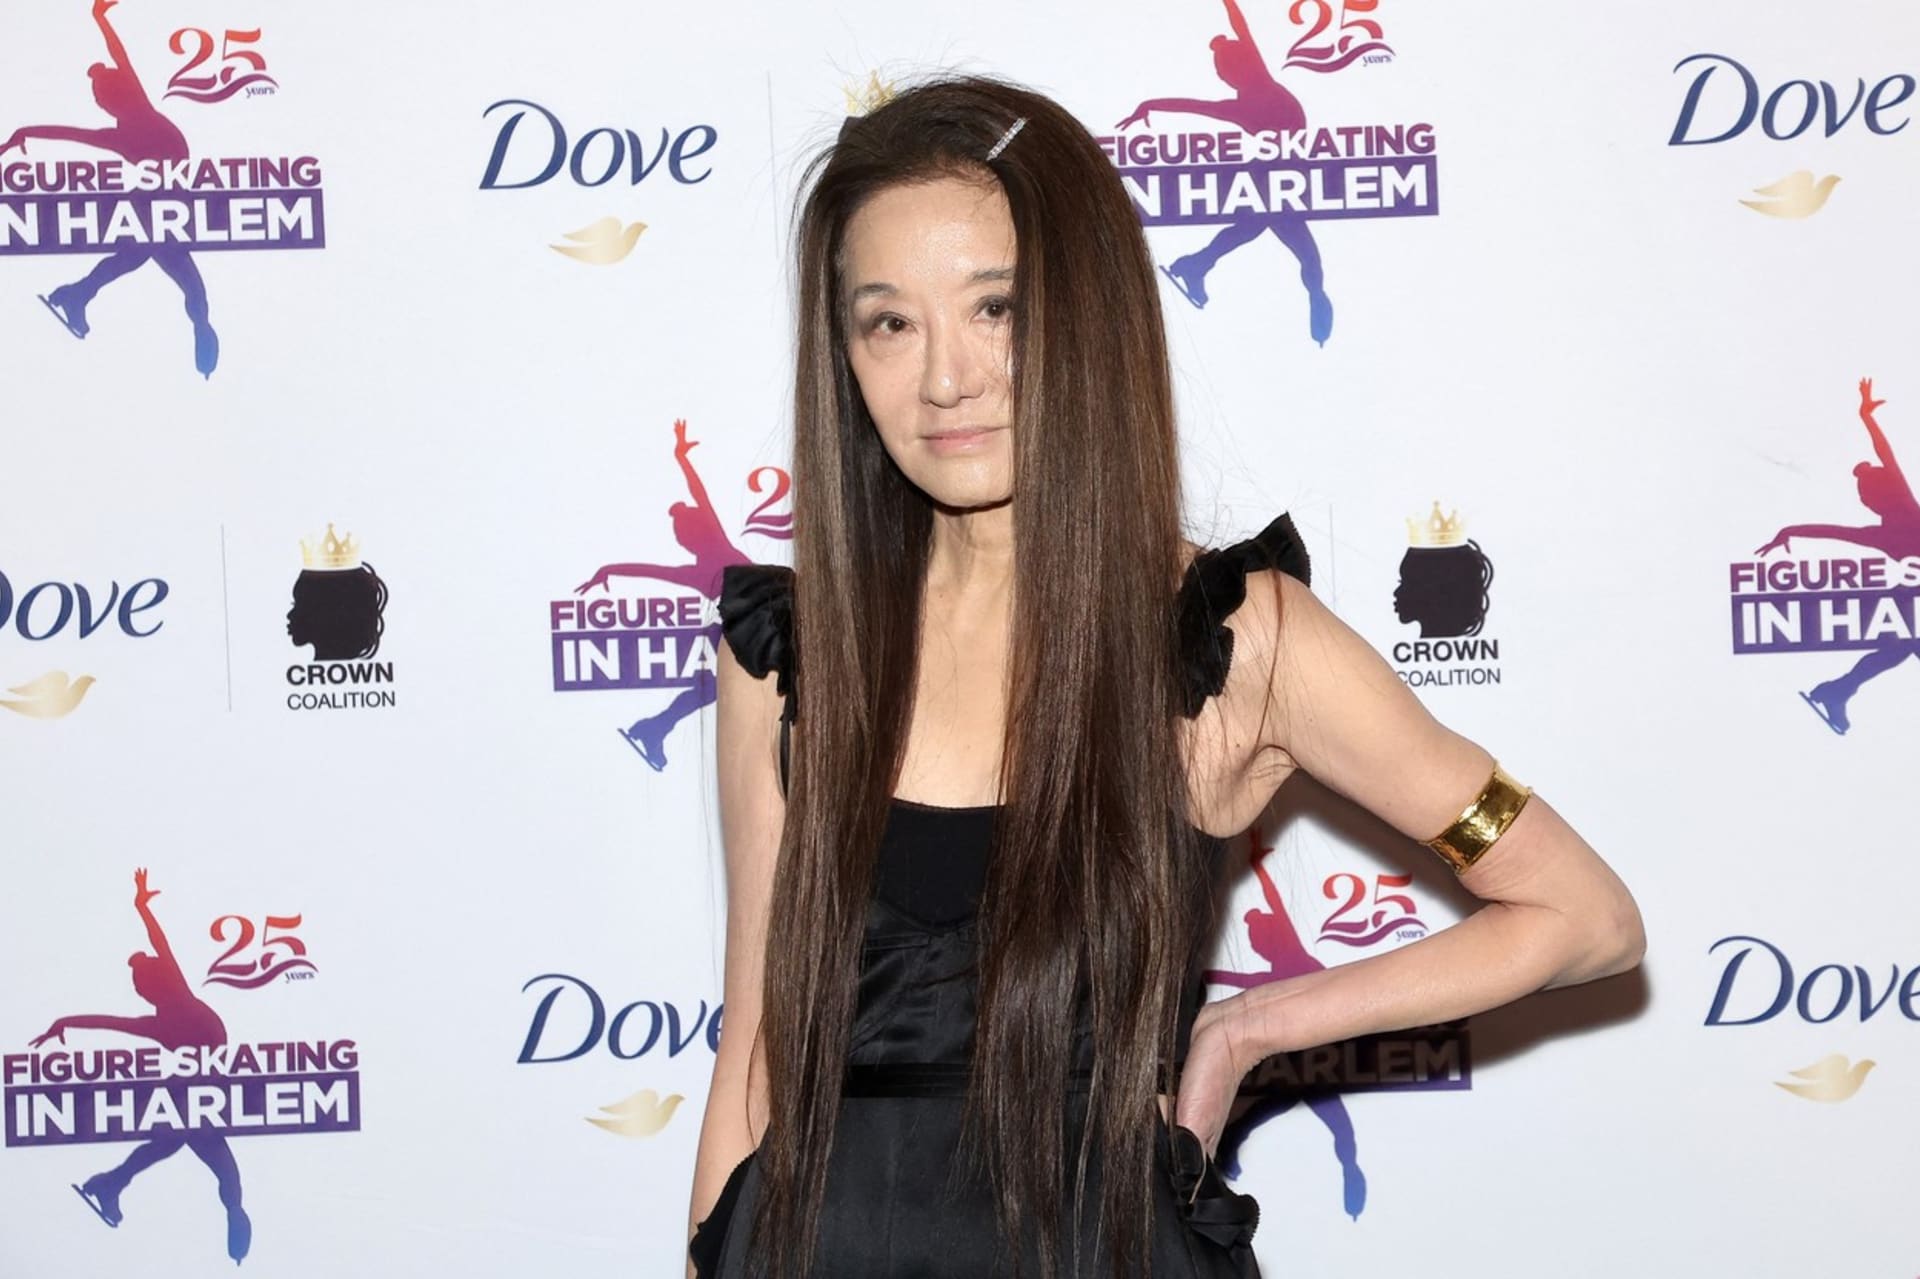 Vera Wangová prozradila, že mladistvý vzhled ji pomáhá udržet i vodka.